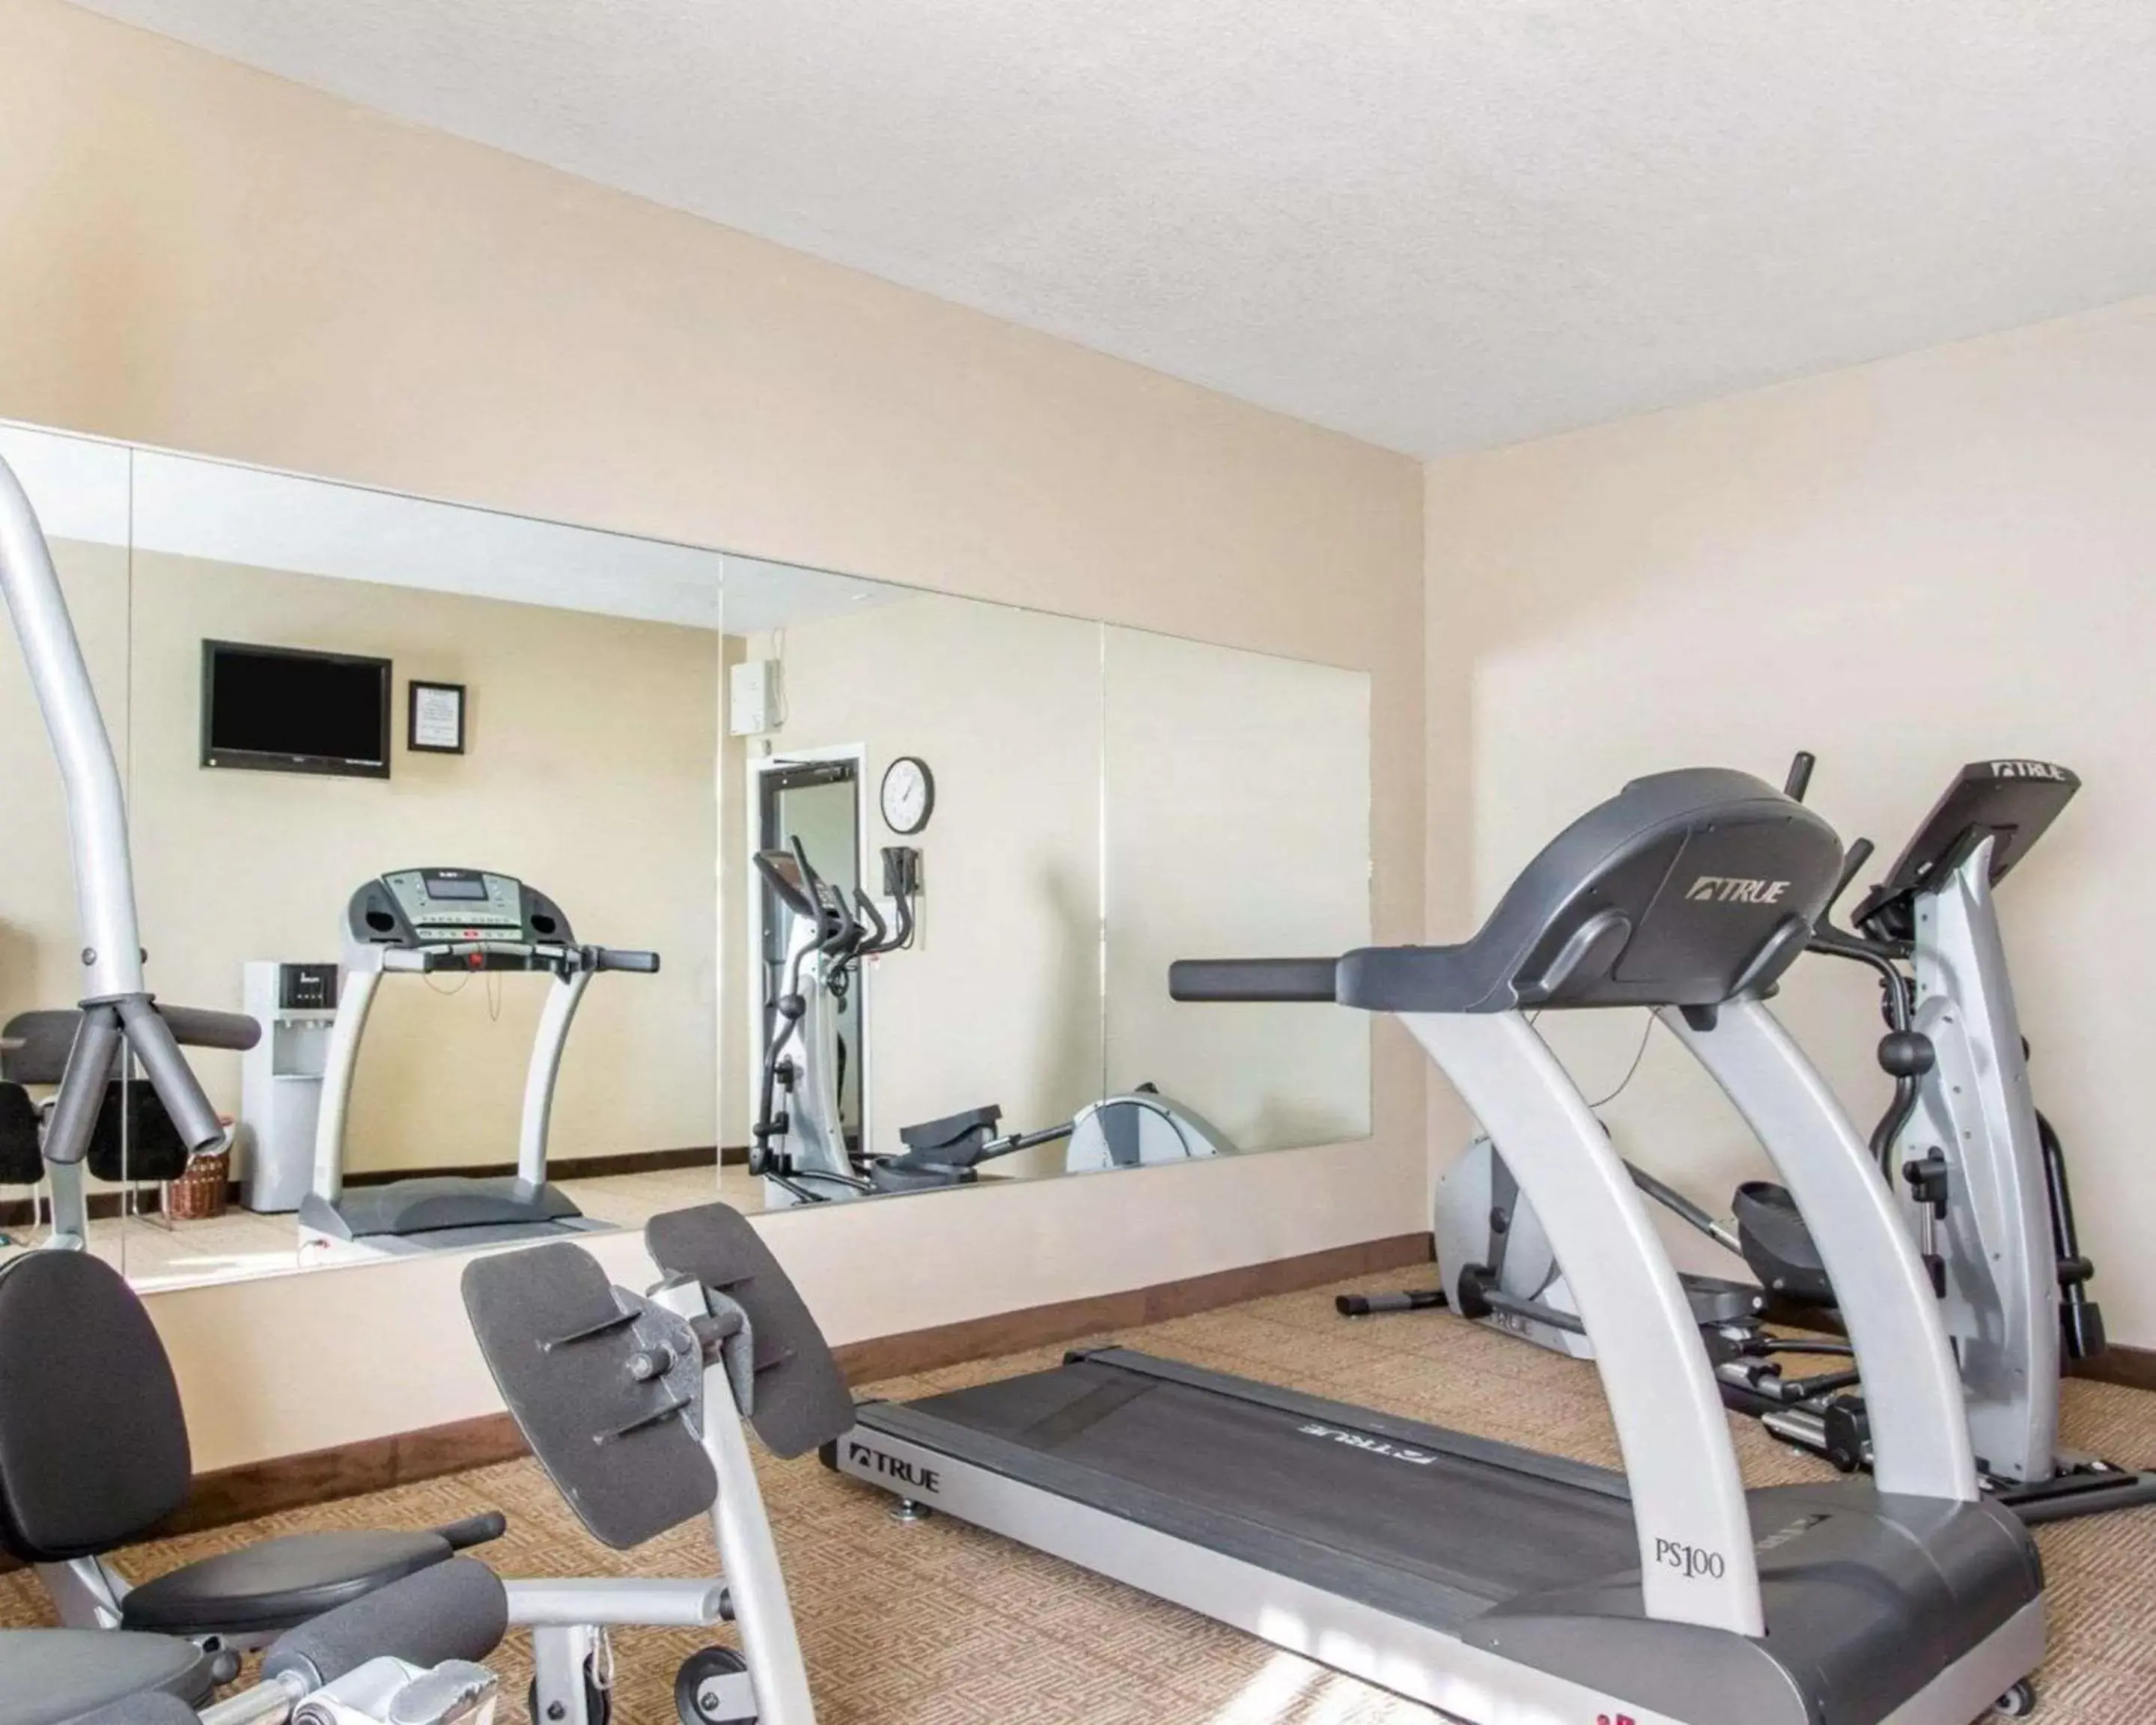 Fitness centre/facilities, Fitness Center/Facilities in Comfort Inn Bolivar